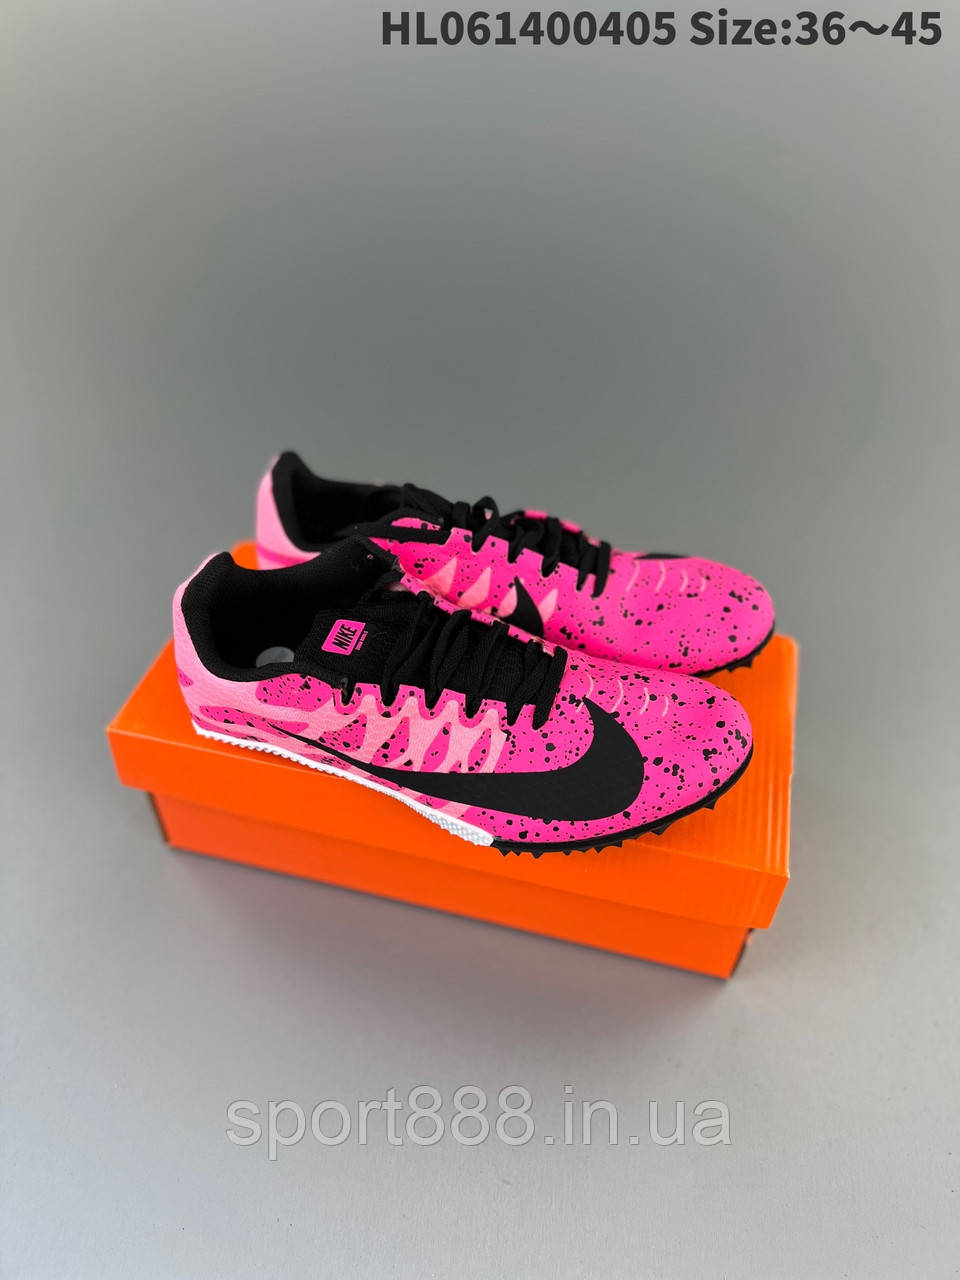 Eur39-45 шиповки рожеві для бігу кросівки NIKE AIR ZOOM RIVAL S9 чоловічі жіночі